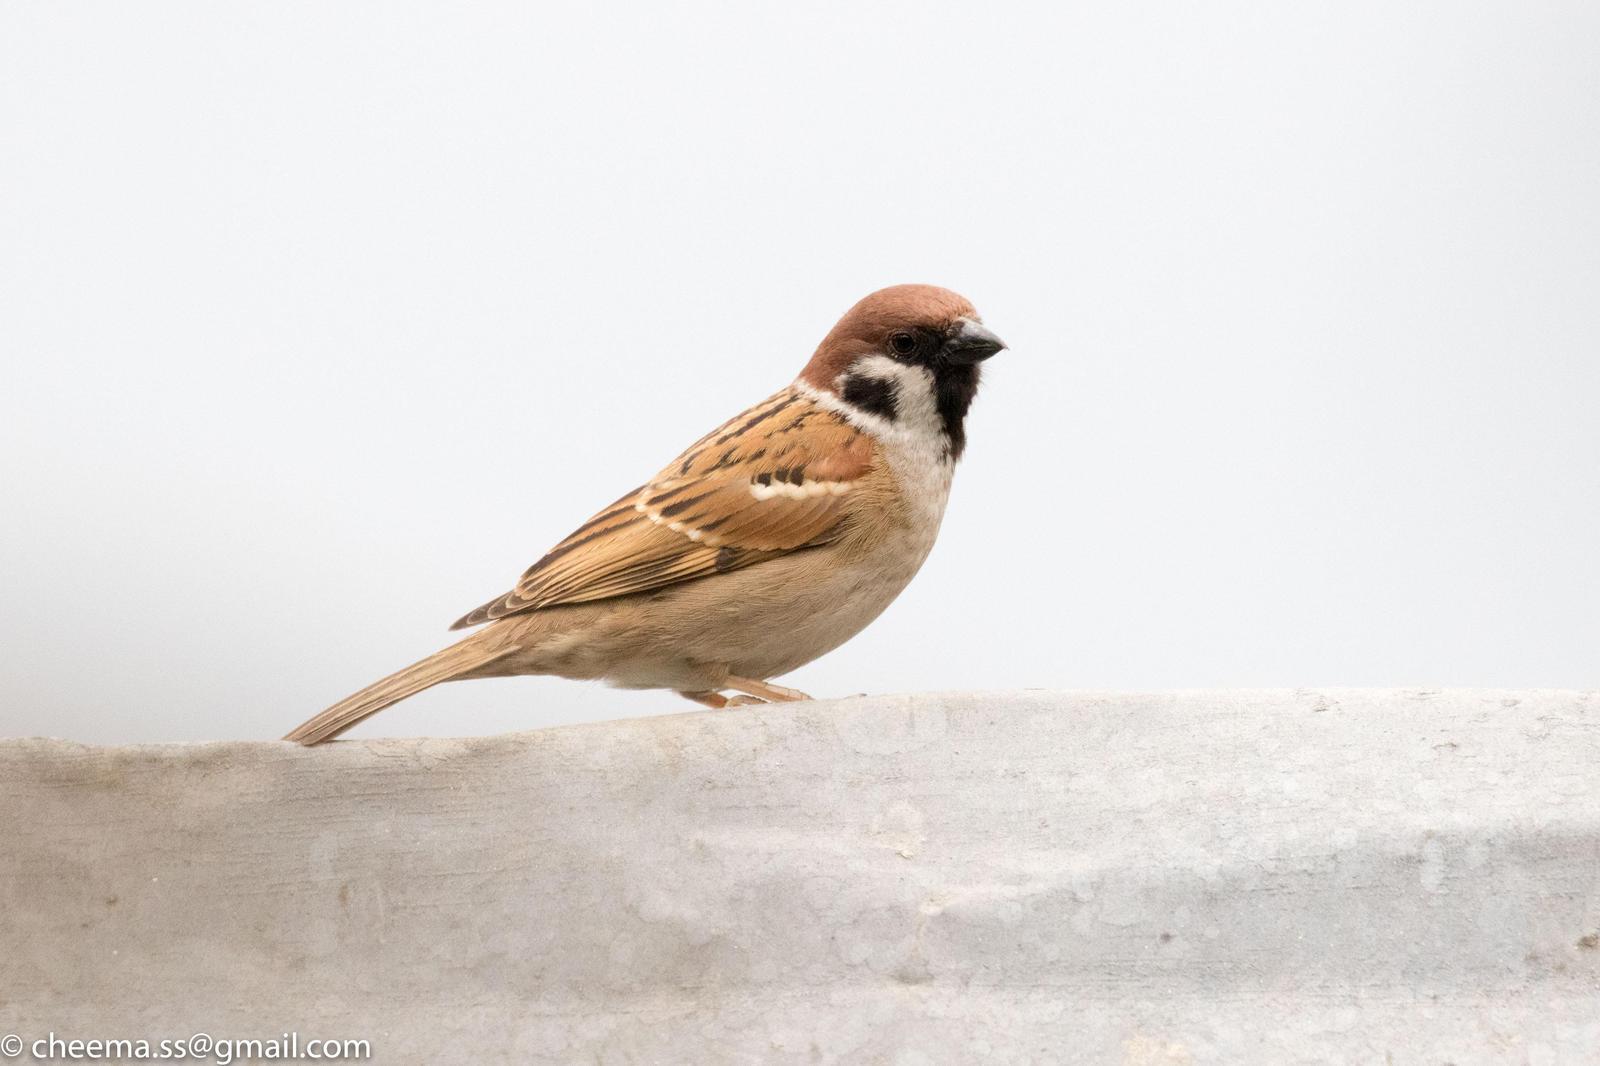 Eurasian Tree Sparrow Photo by Simepreet Cheema